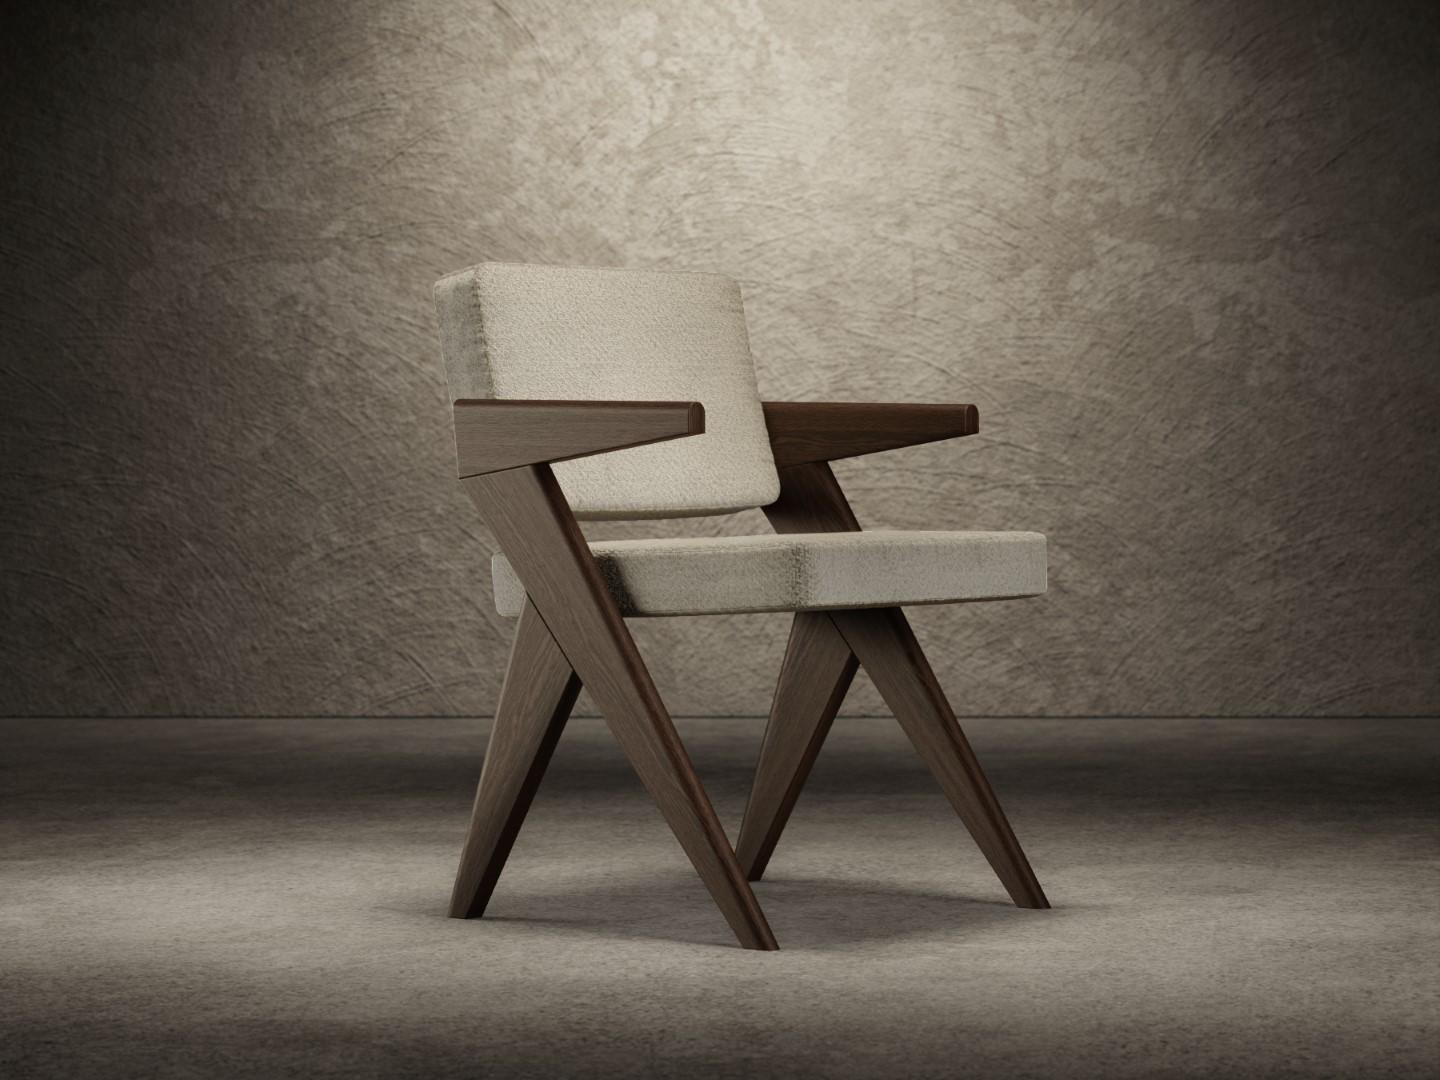 La chaise Souvenir existe en deux versions différentes - avec et sans accoudoirs - et se compose de deux côtés structurels en bois d'orme sablé, finis avec une laque mate, naturelle ou foncée. 
L'assise et le dossier sont rembourrés de mousse de